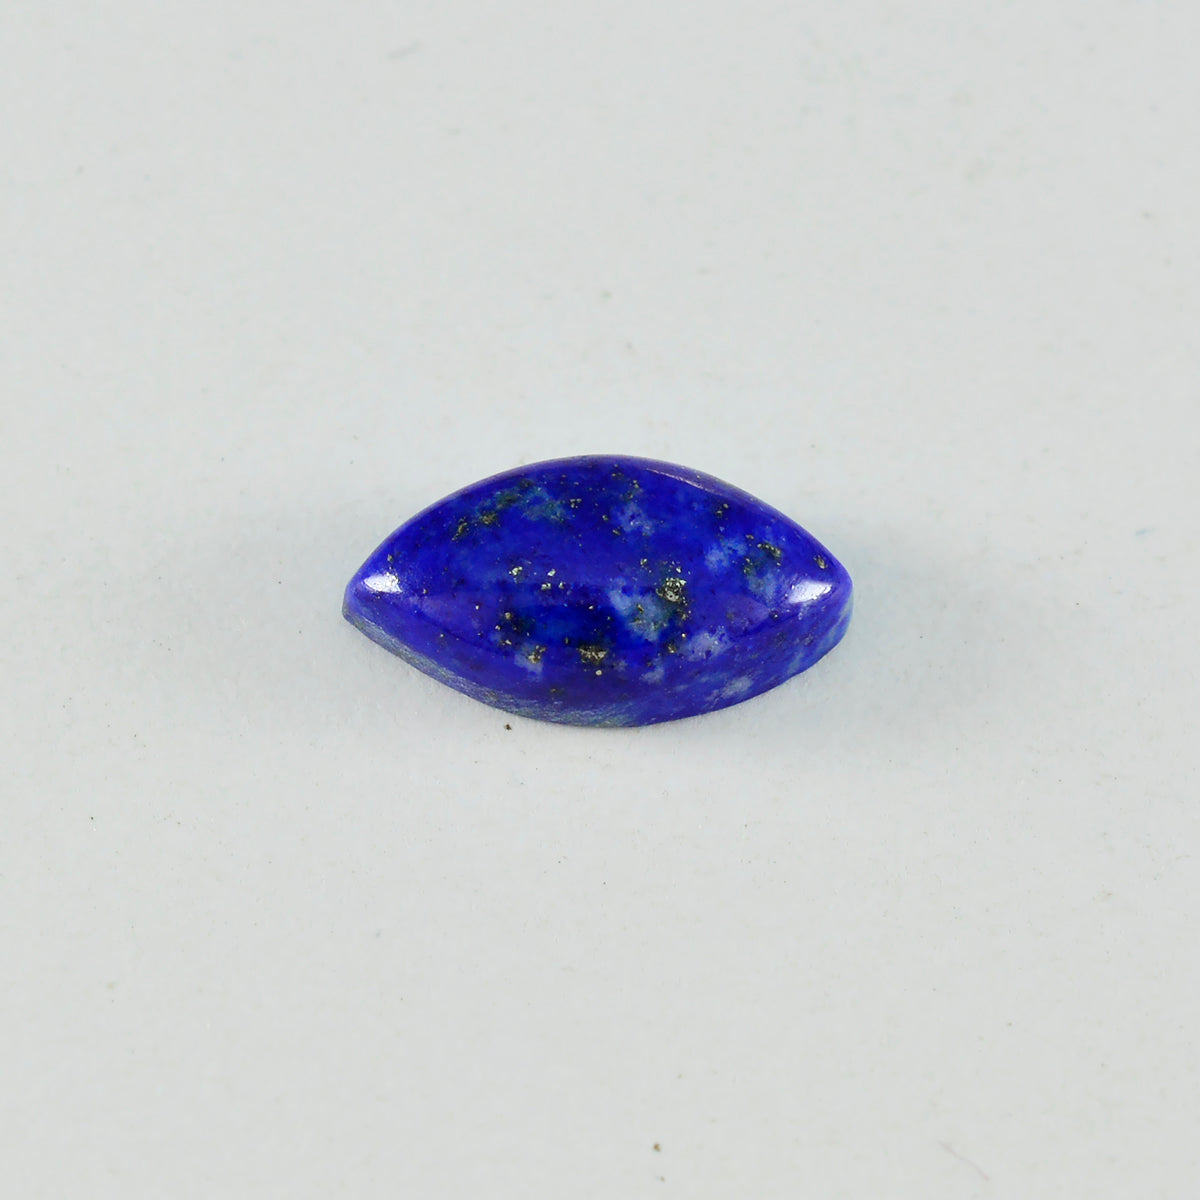 Riyogems 1 Stück blauer Lapislazuli-Cabochon, 9 x 18 mm, Marquise-Form, hübsche, hochwertige lose Edelsteine